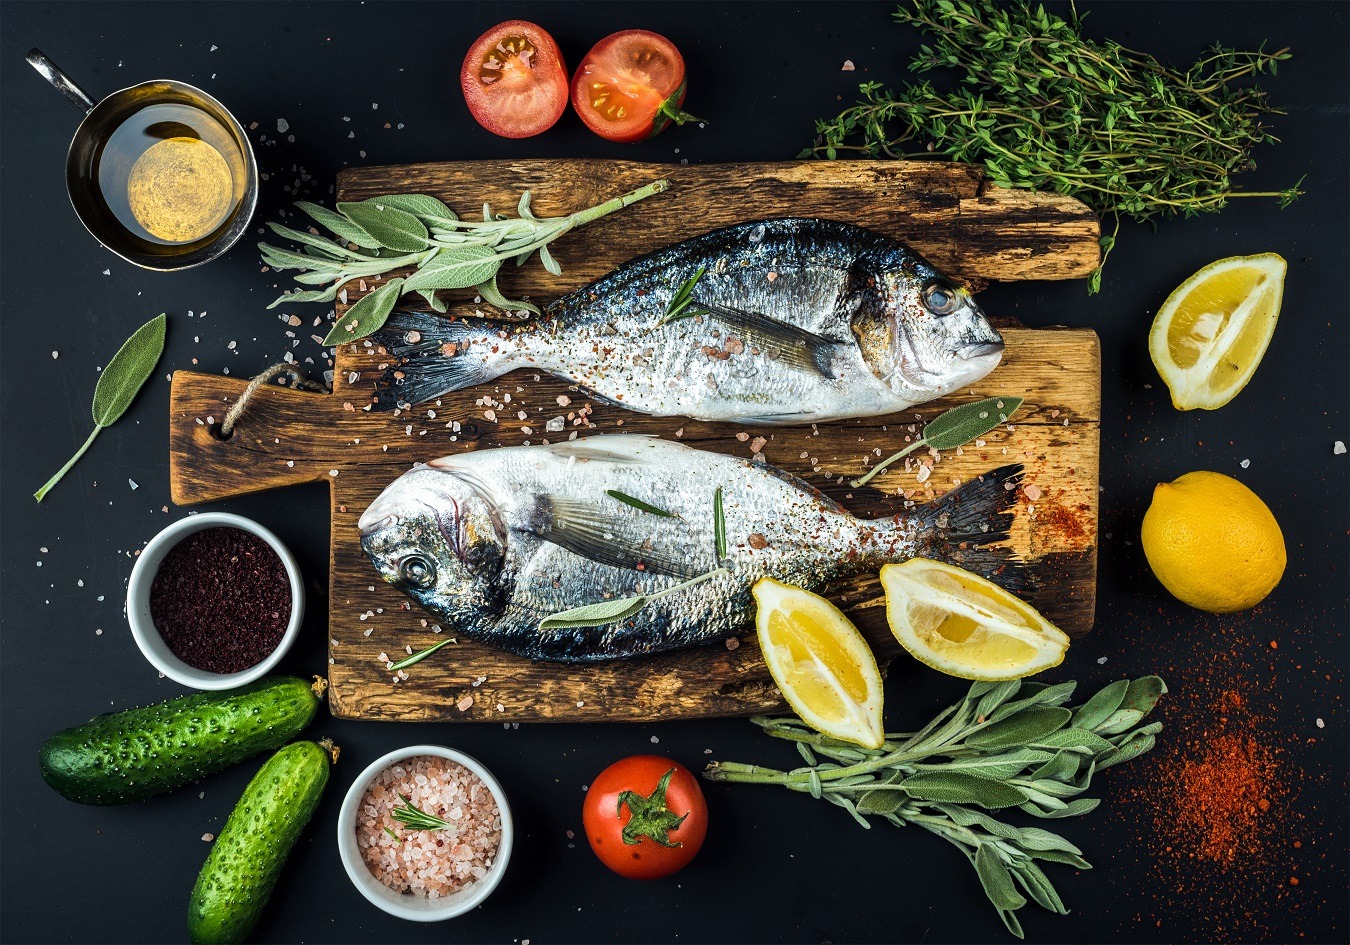 Hranește-te corect! Pește toxic versus pește sănătos